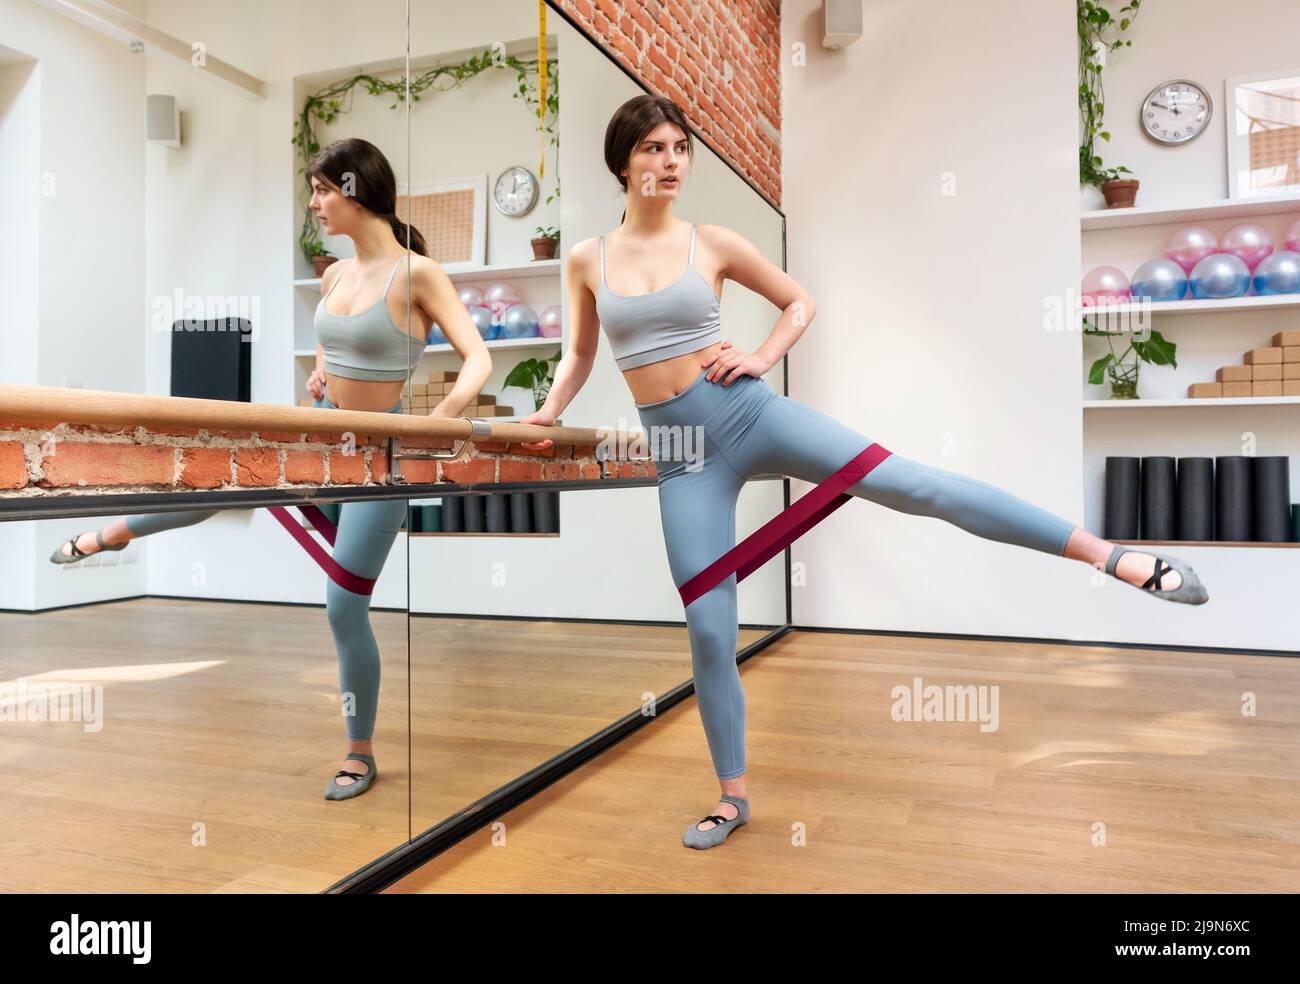 Ganzer Körper der schlanken Tänzerin, die in der Nähe von Barre steht und mit Gummiband trainiert, während sie Kniebeugen macht und im Tanzstudio mit Spiegel wegschaut. Stockfoto